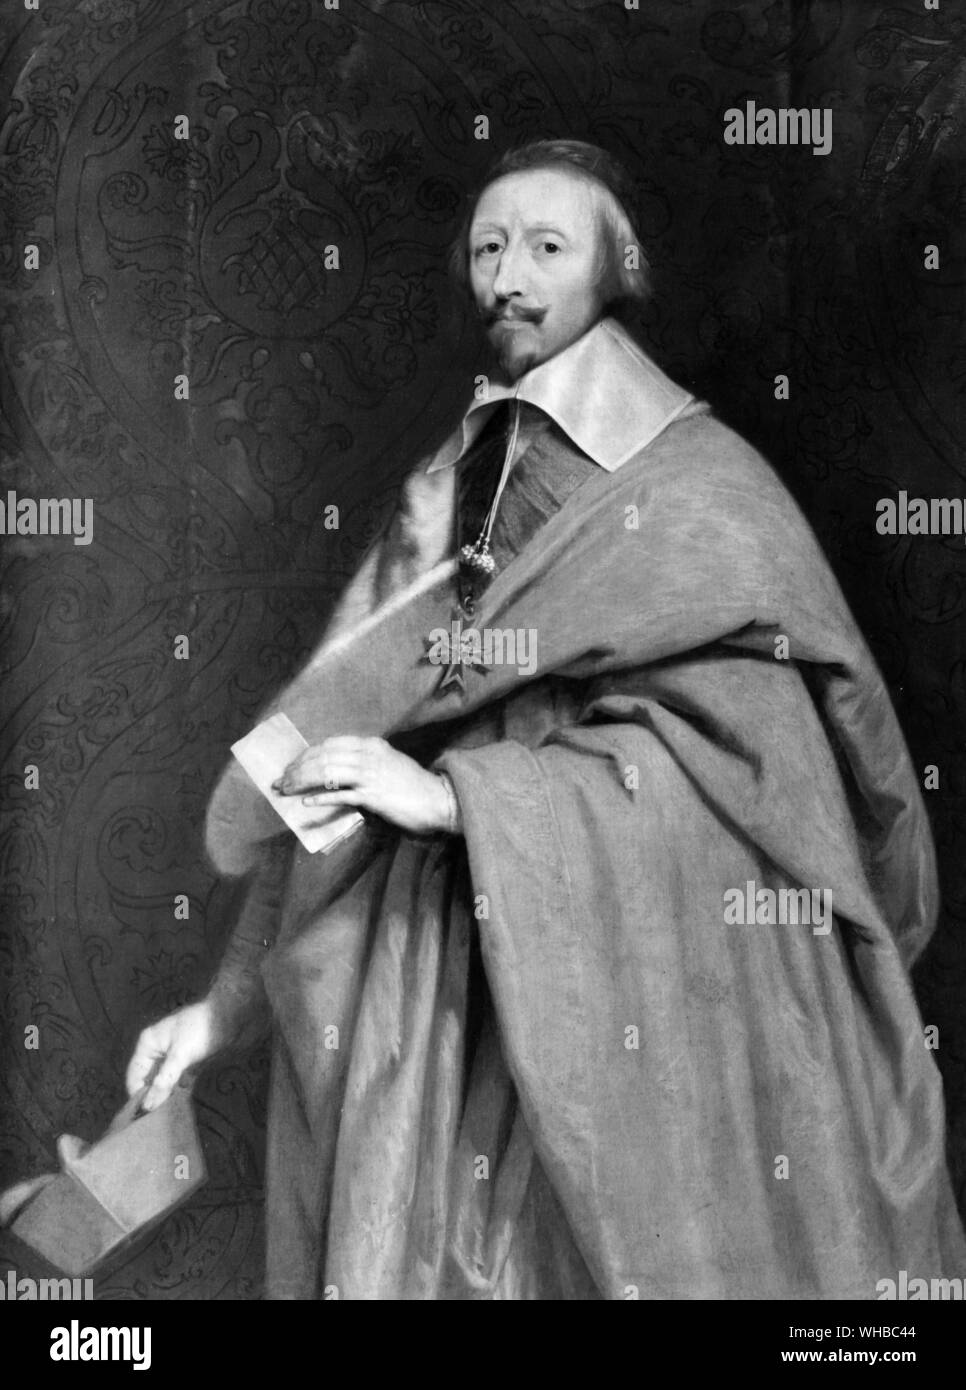 Kardinal Richelieu - Philippe de Champagne, Versailles,. Armand Jean du Plessis de Richelieu, Cardinal-Duc de Richelieu (9. September 1585 - Dezember 4, 1642), war ein französischer Geistlicher, edel und Staatsmann. Als Bischof im Jahr 1607 geweiht, die er später in die Politik und wird zu einem Staatssekretär in 1616. Richelieu stieg bald sowohl in der Kirche und dem Staat, zu einem Kardinal in 1622 und König Ludwig XIII von Chief Minister in 1624. Er blieb bis zu seinem Tod im Jahre 1642, als er von Jules Kardinal Mazarin gelungen.. Stockfoto